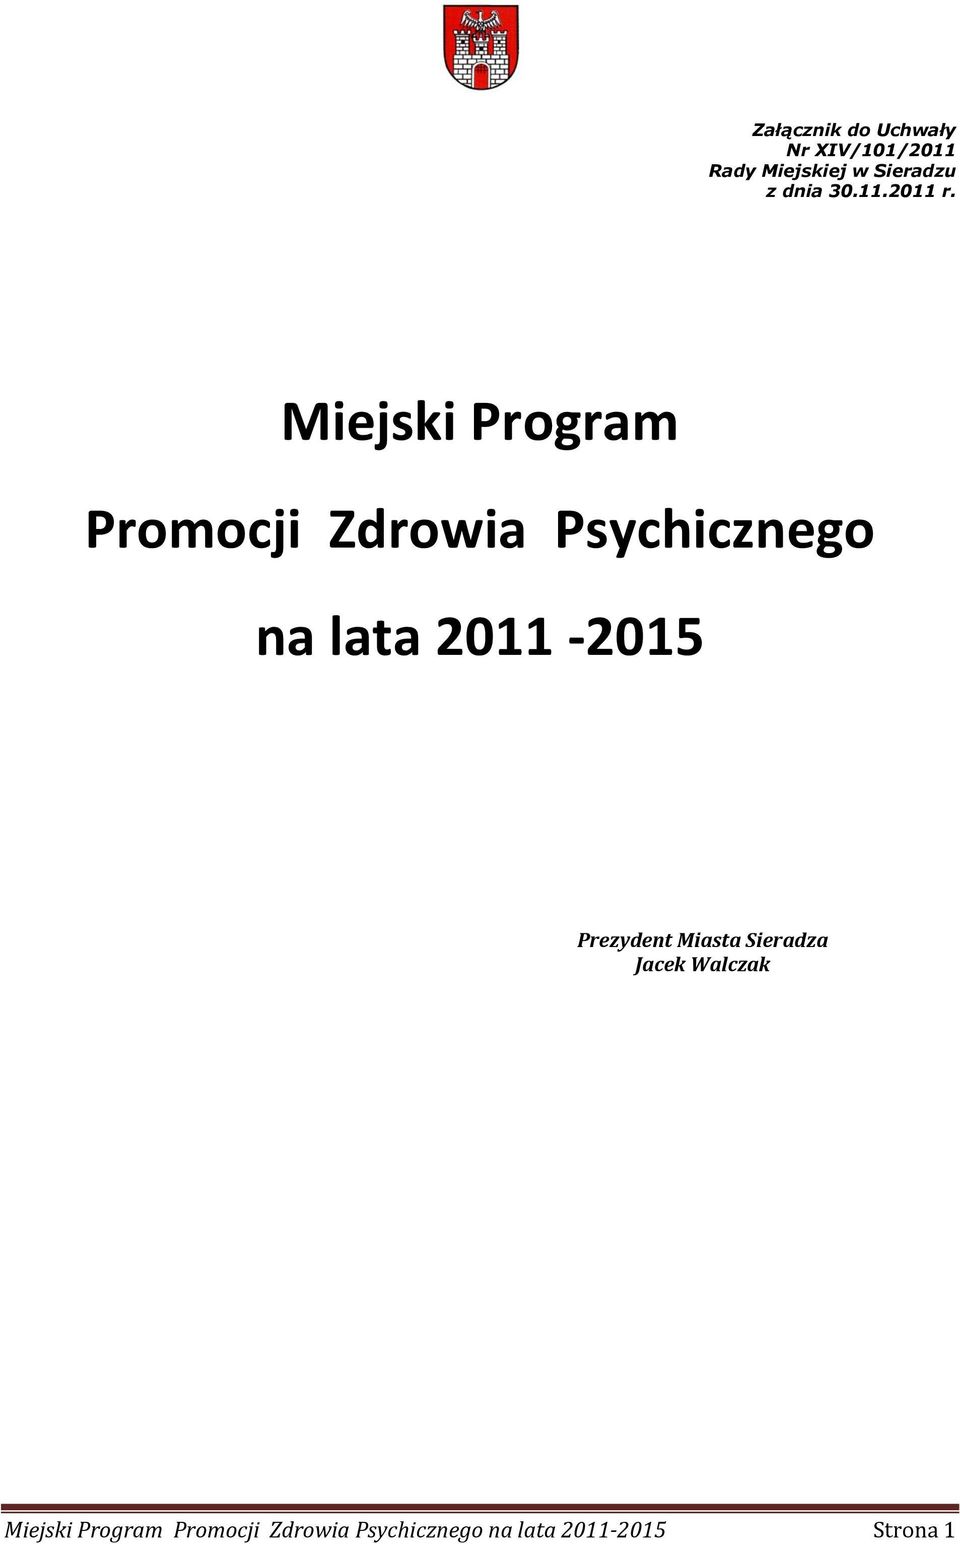 Miejski Program Promocji Zdrowia Psychicznego na lata 2011-2015